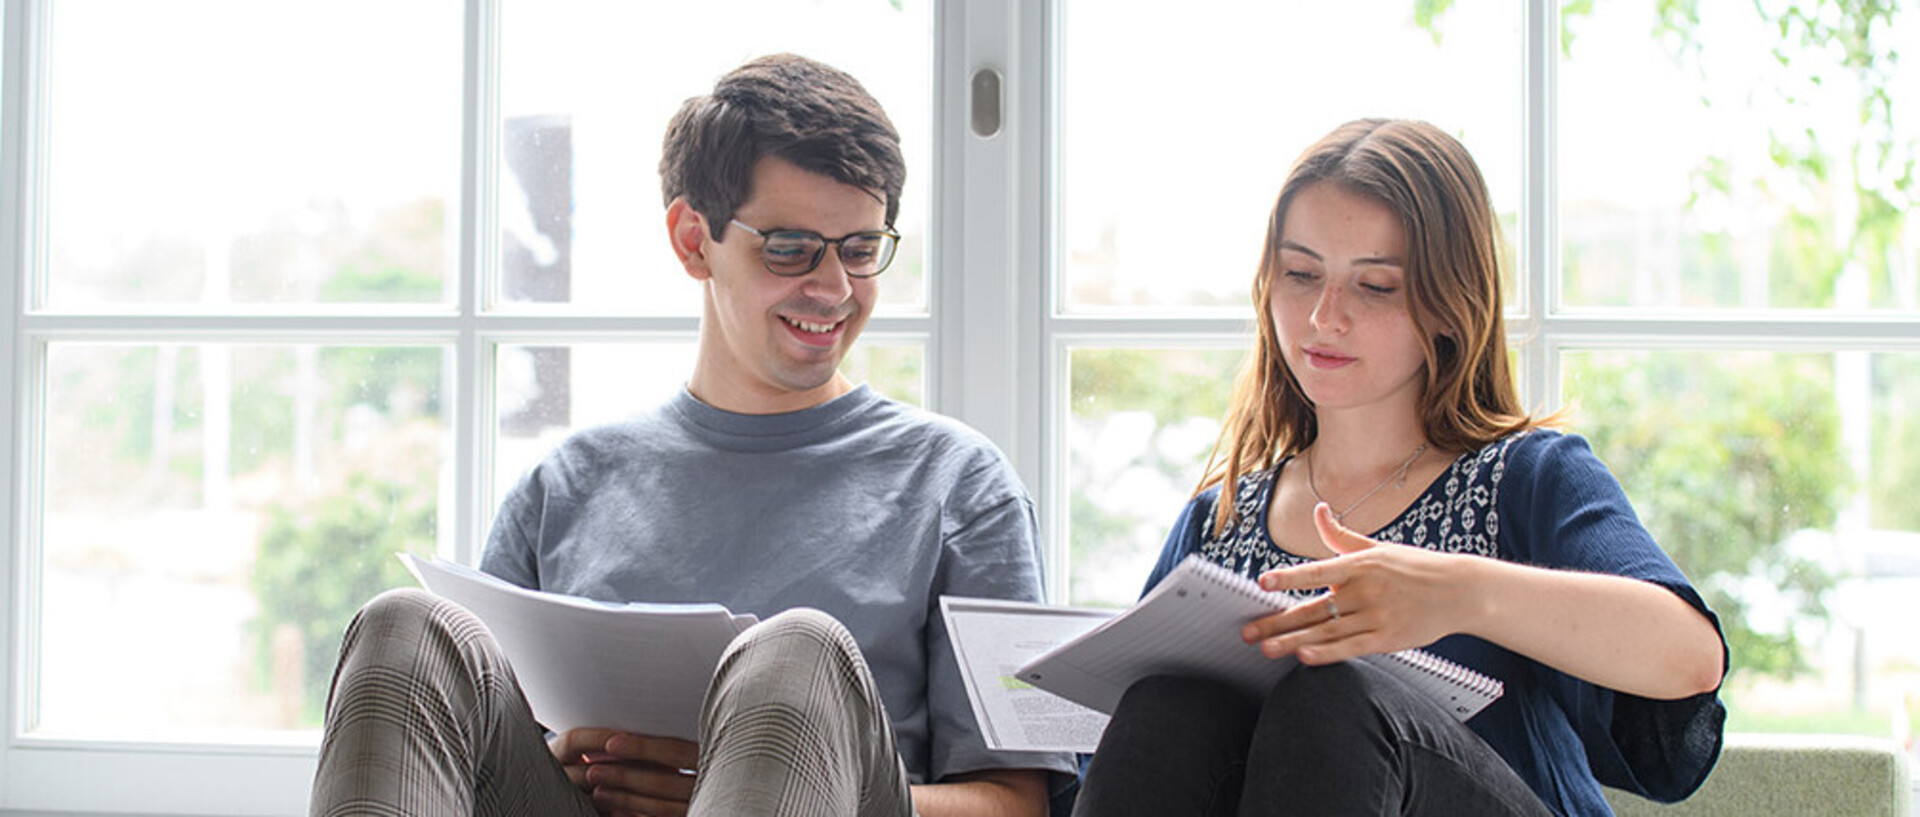 Ein Student und eine Studentin sitzen am Fenster und betrachten ein Vorlesunsskript